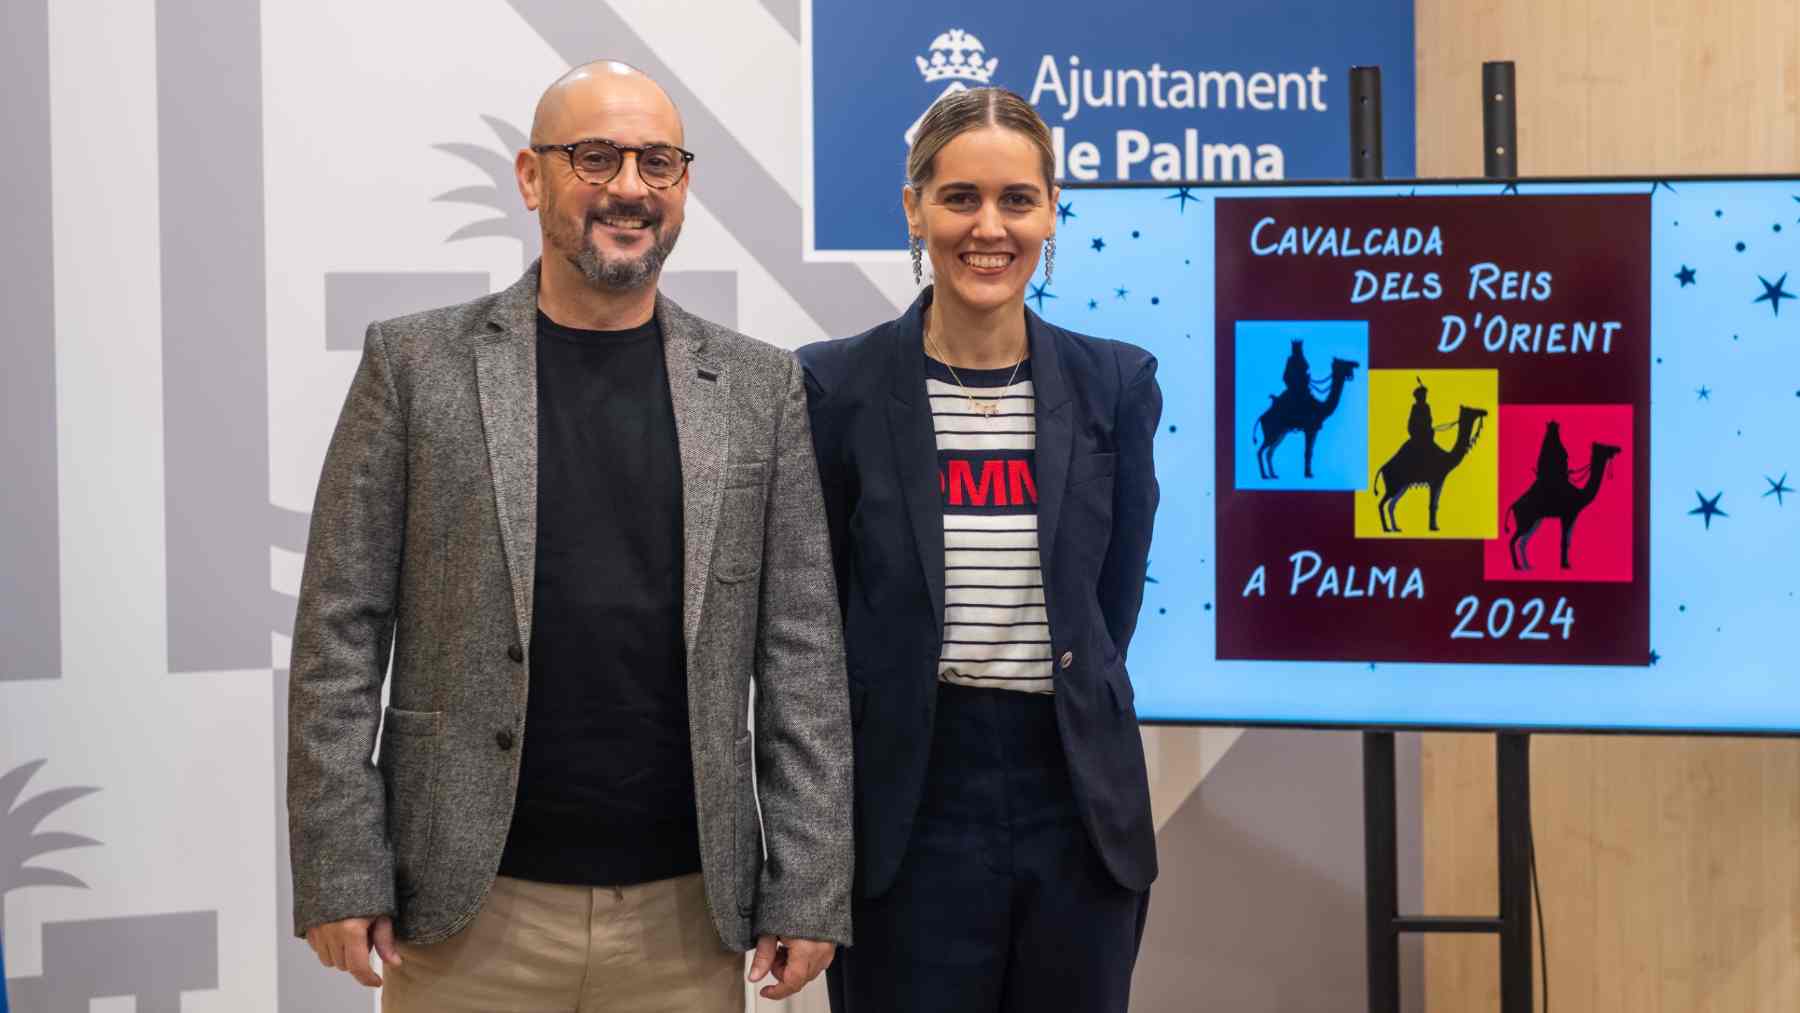 El Ayuntamiento de Palma ha presentado las novedades de la Cabalgata de Reyes de la ciudad.